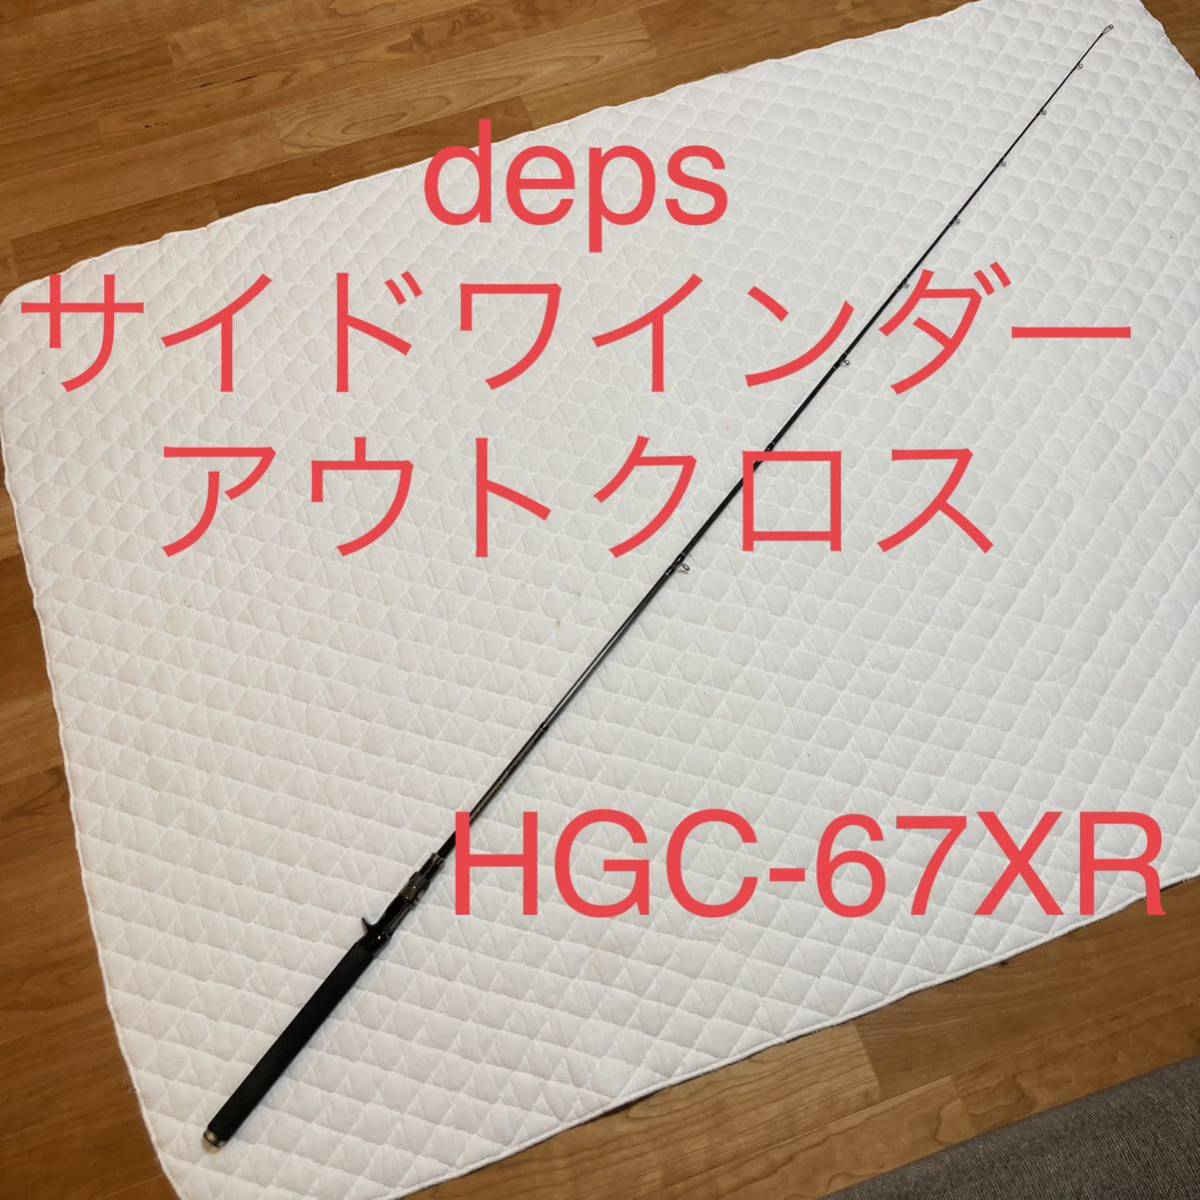 deps デプス　HGC-67XR/GPアウトクロス OUTCROSS